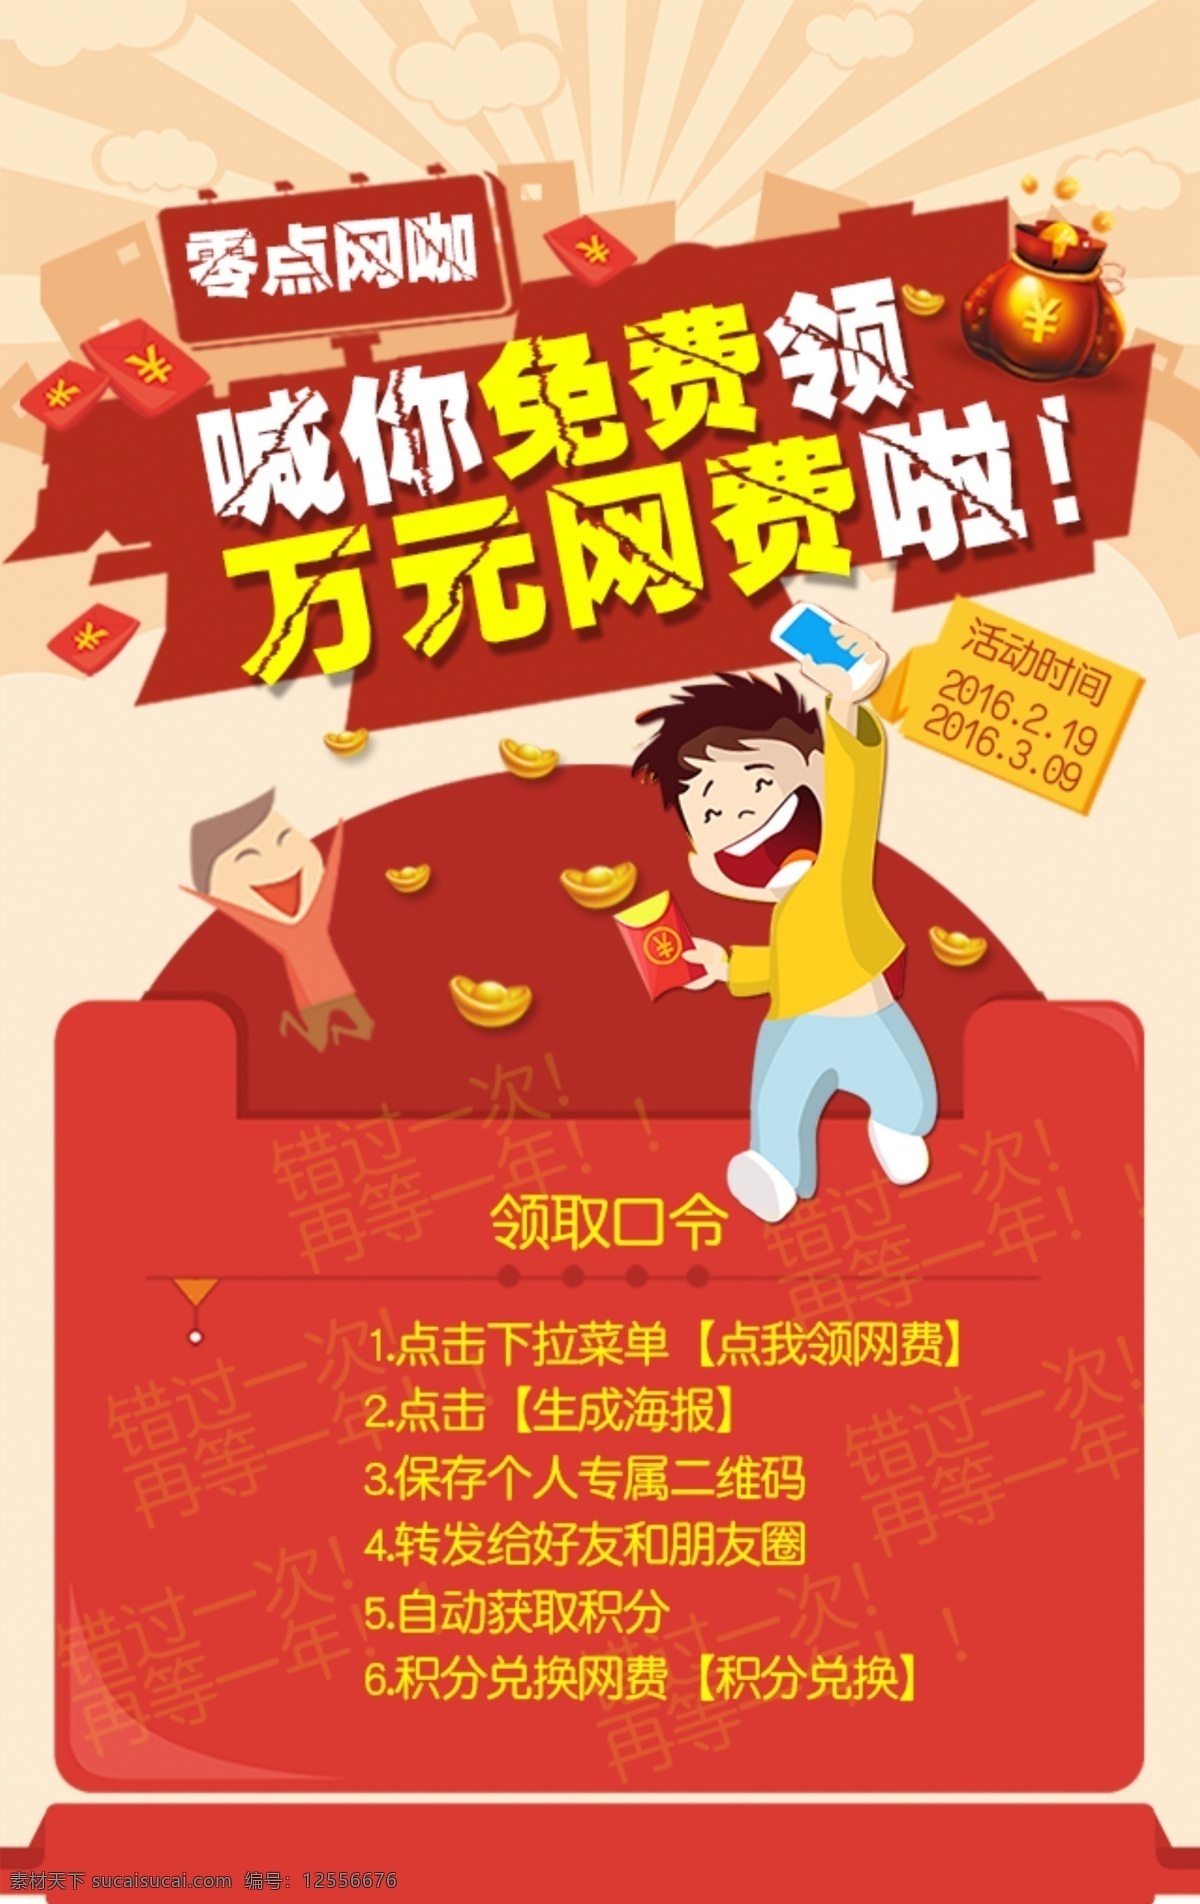 网咖活动海报 网咖活动 海报下载 红包 元宝 网费 网咖 web 界面设计 中文模板